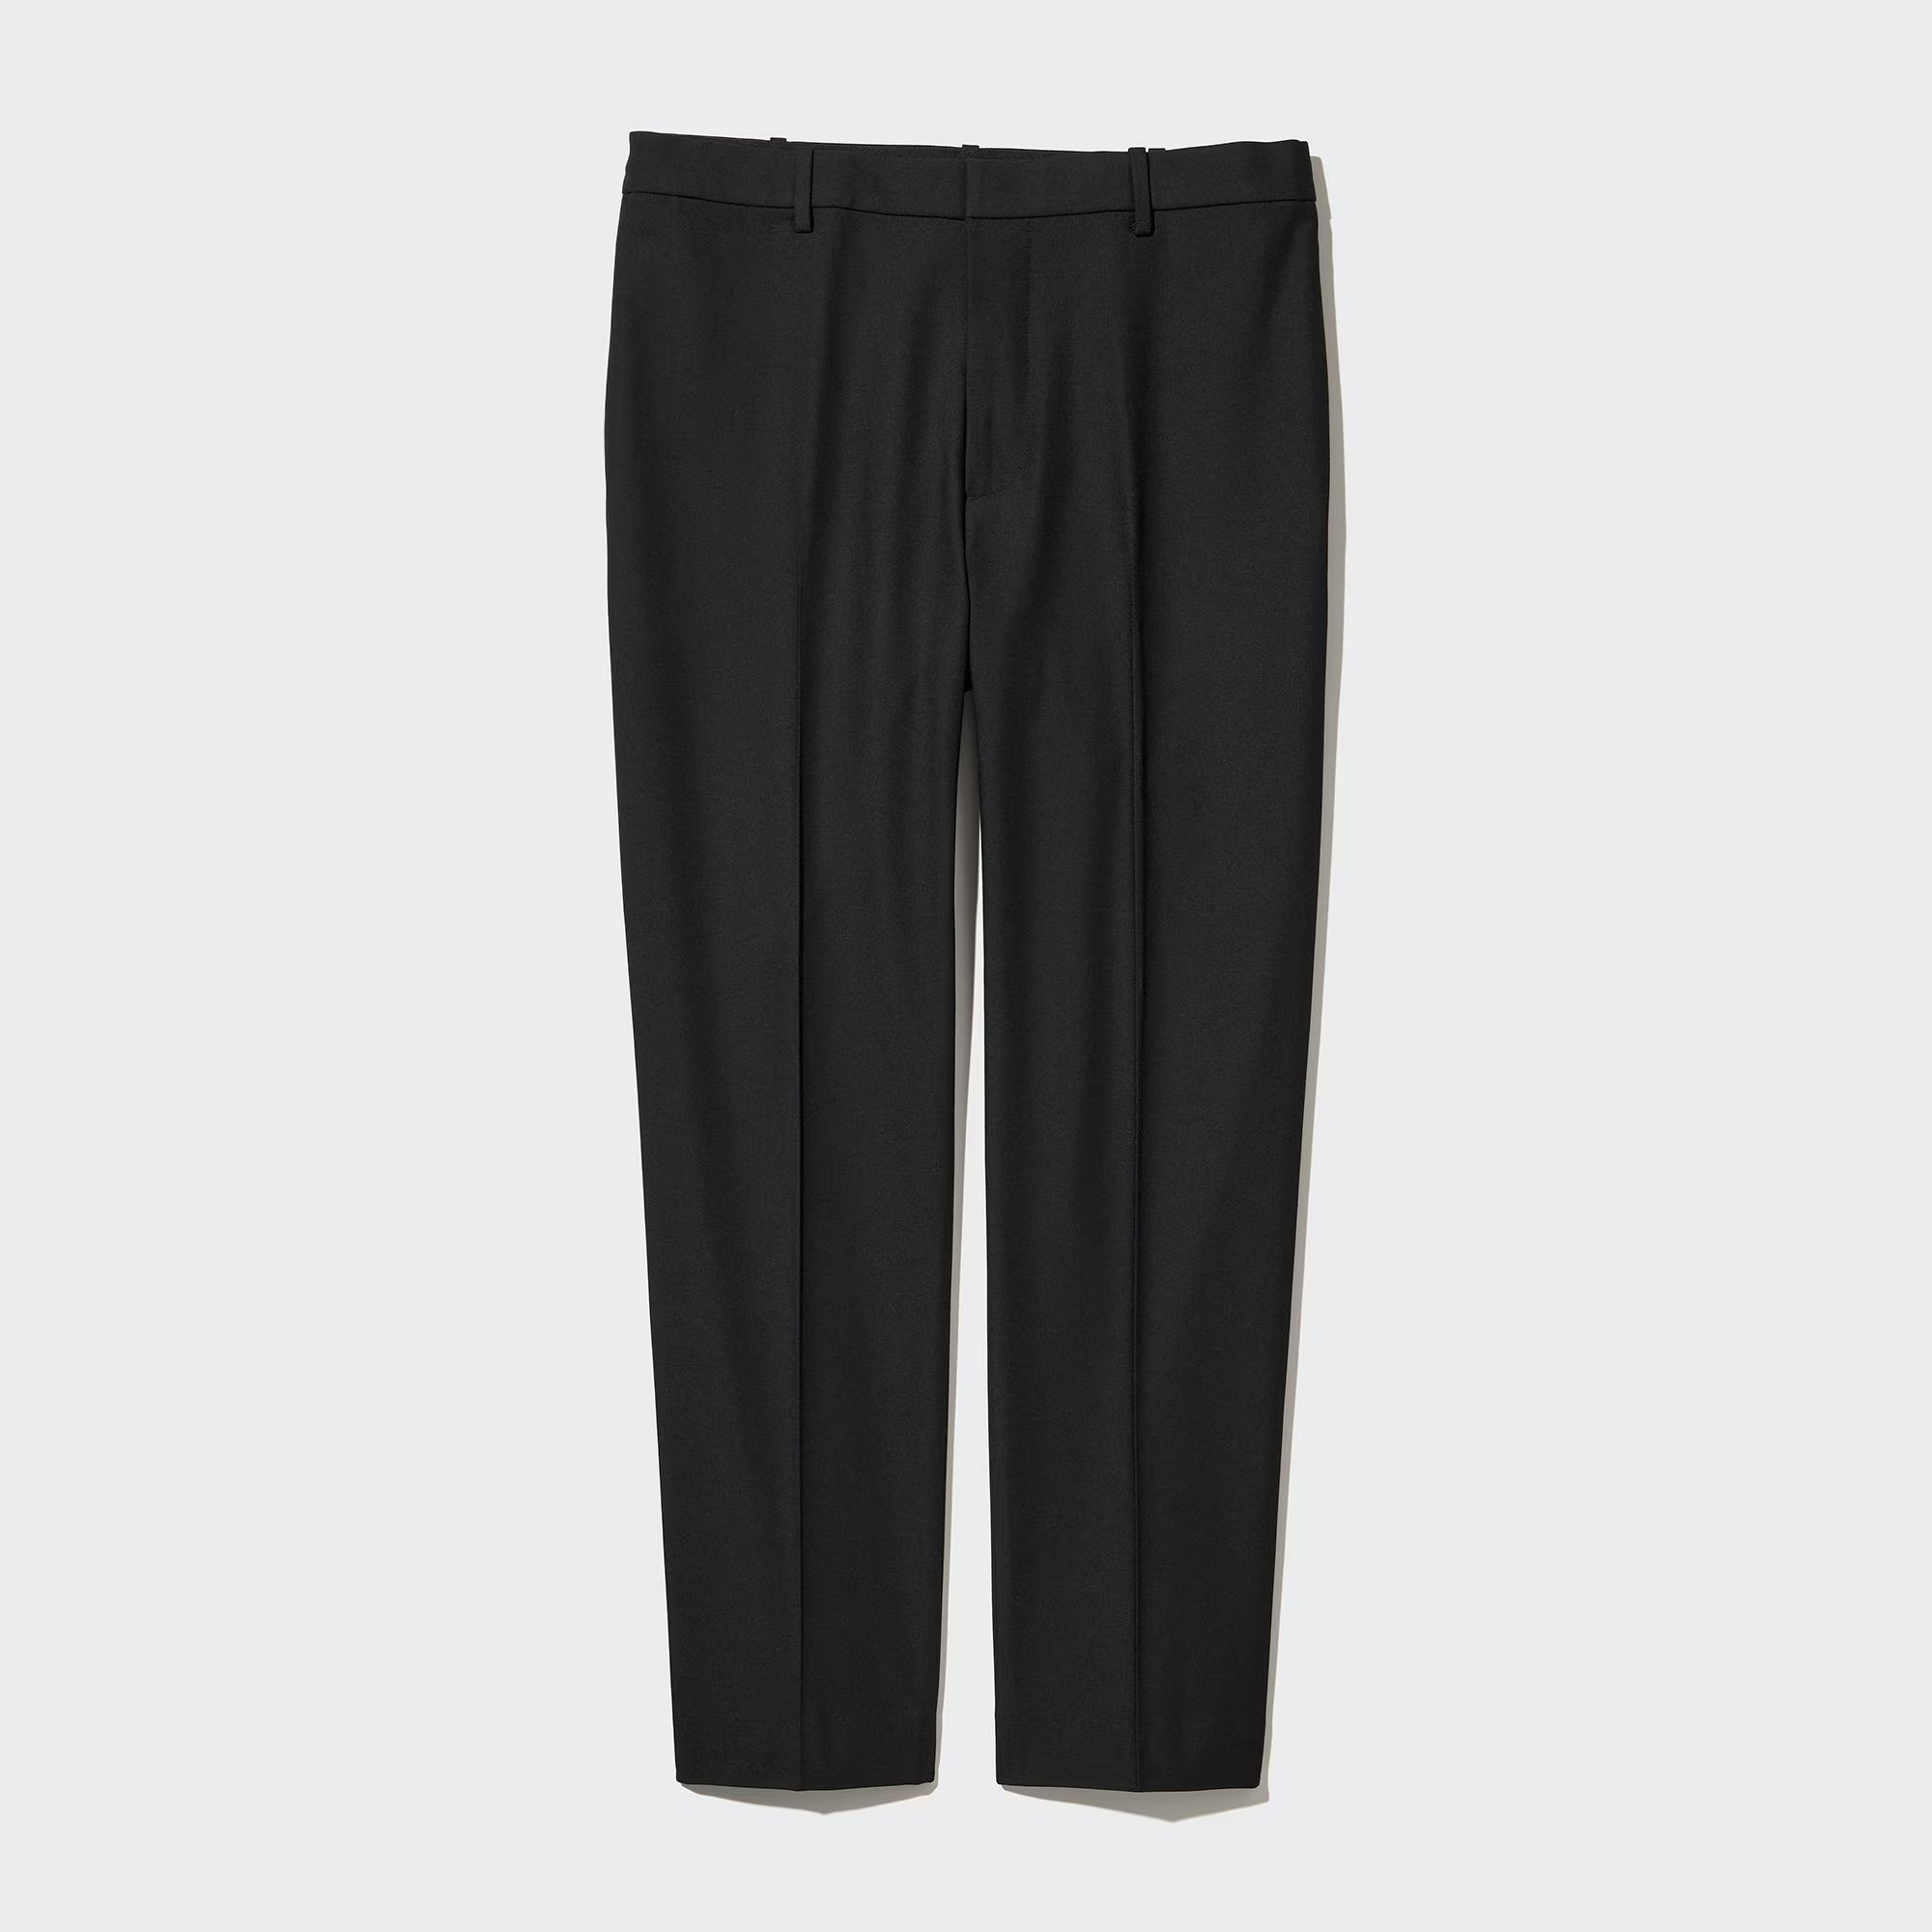 Брюки Uniqlo Smart Wool-Like Ankle Length, черный брюки uniqlo smart comfort ankle length long светло серый